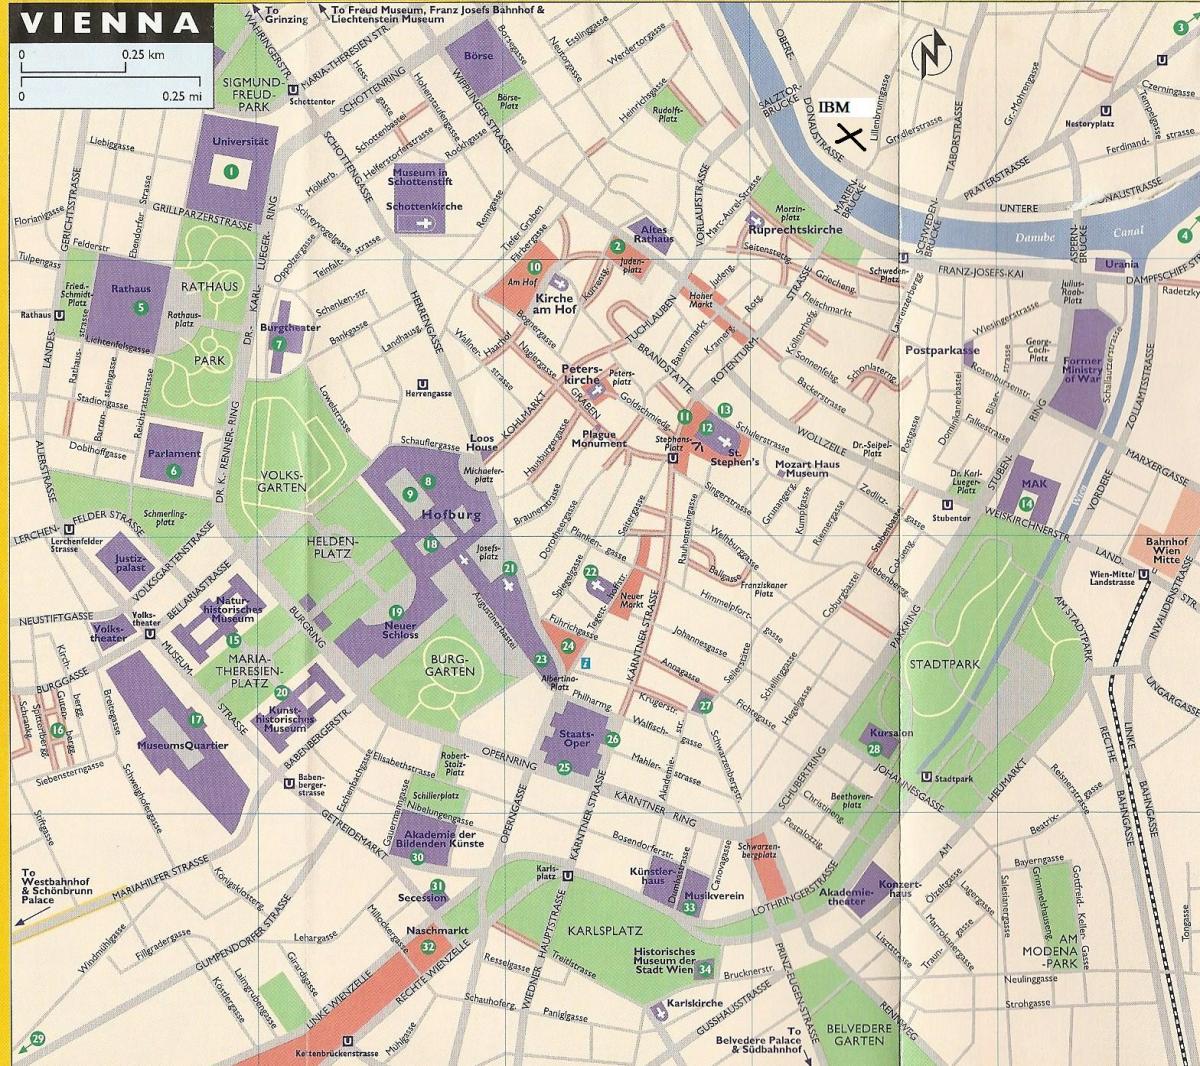 Քարտեզ խանութների Վիեննայում 